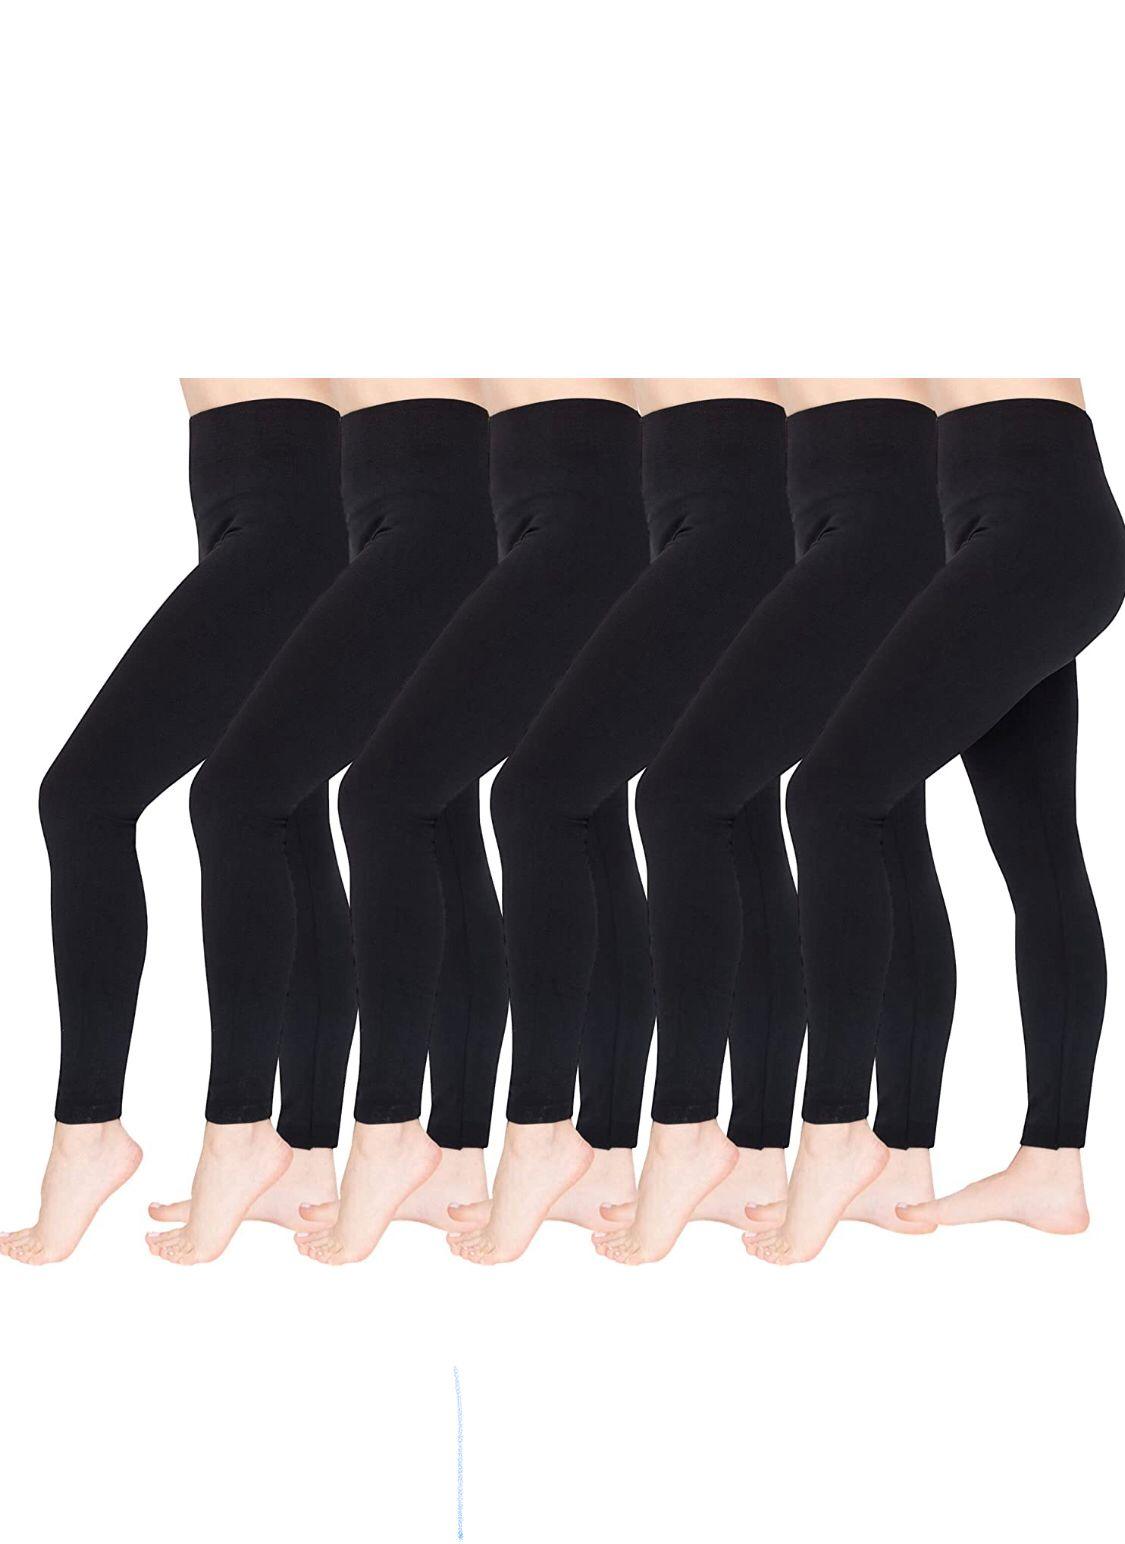 High Waisted Fleece Lined Leggings for Women (6-Pack)